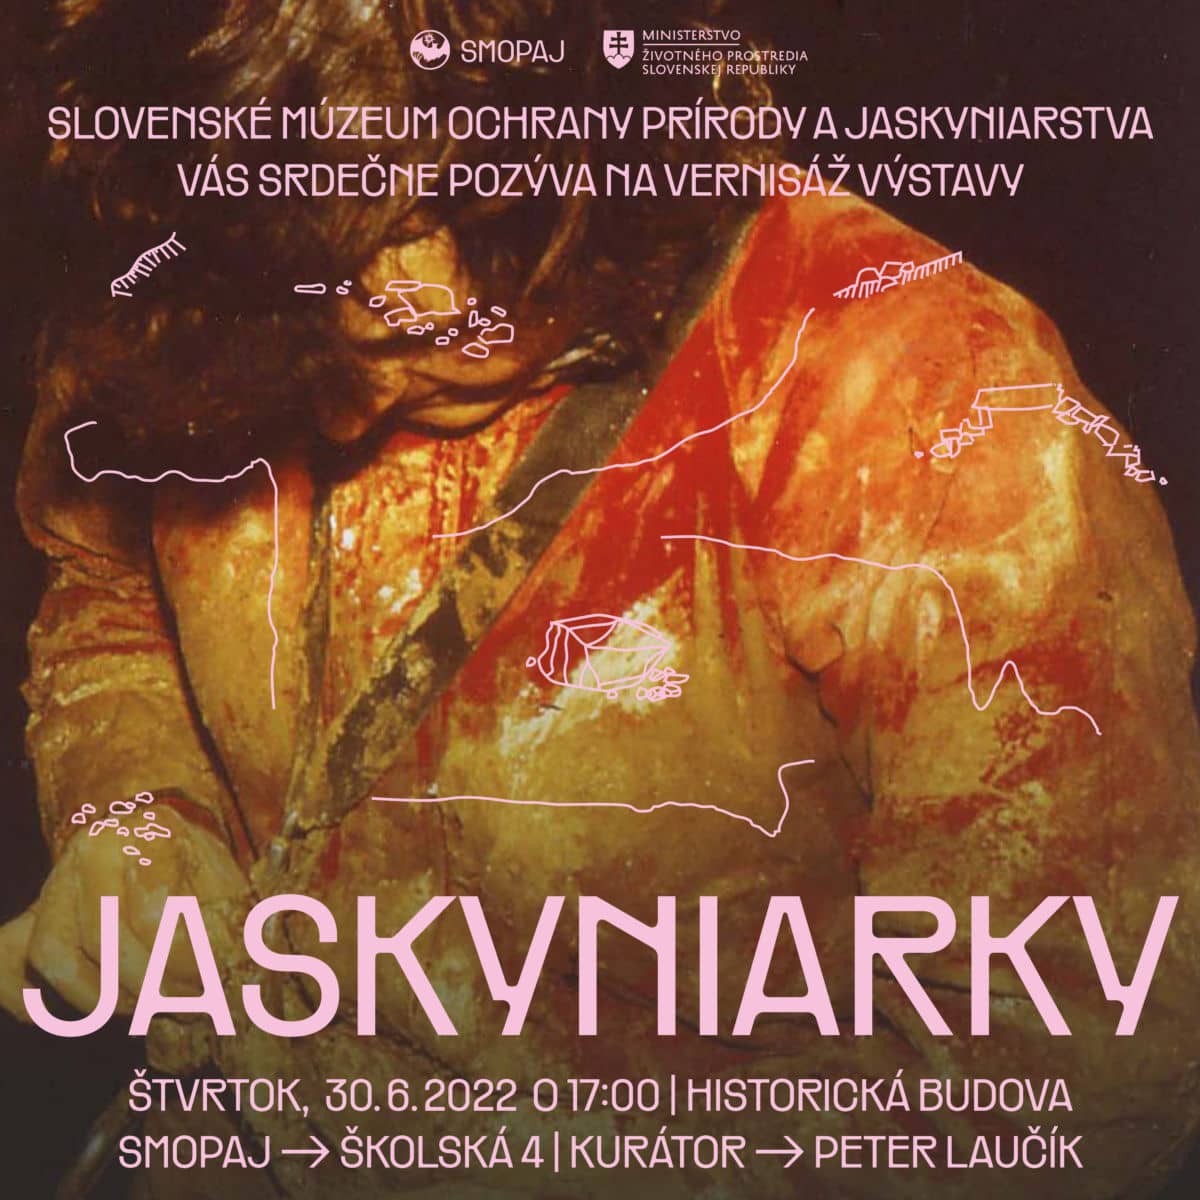 , Jaskyniarky, Slovenská speleologická spoločnosť